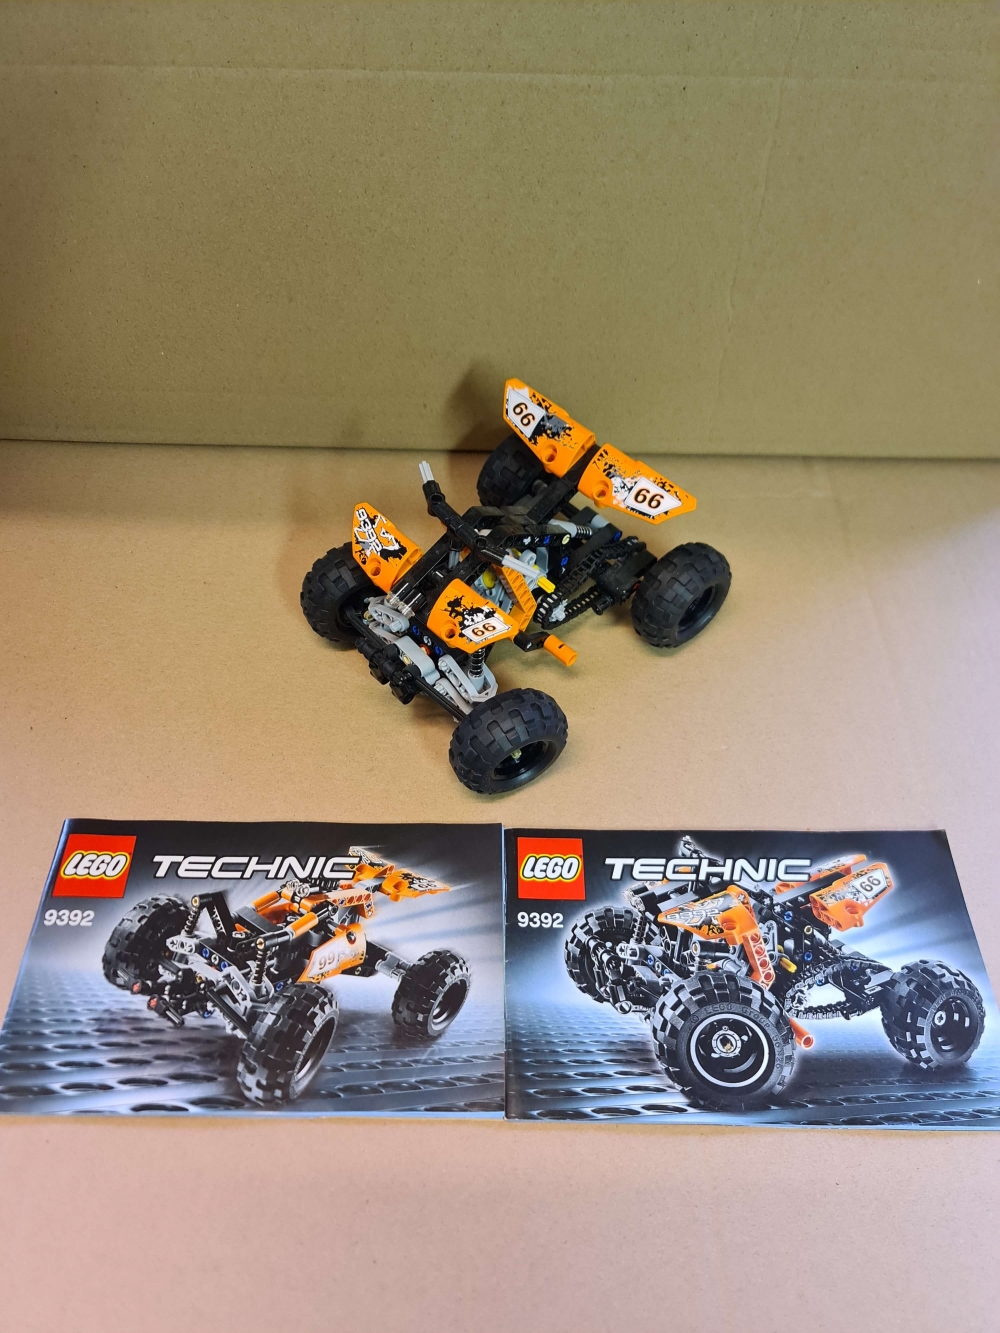 Sett 9392 fra Lego Technic serien.
Meget pent.
Komplett med manualer og alle deler som trengs for alle modeller.